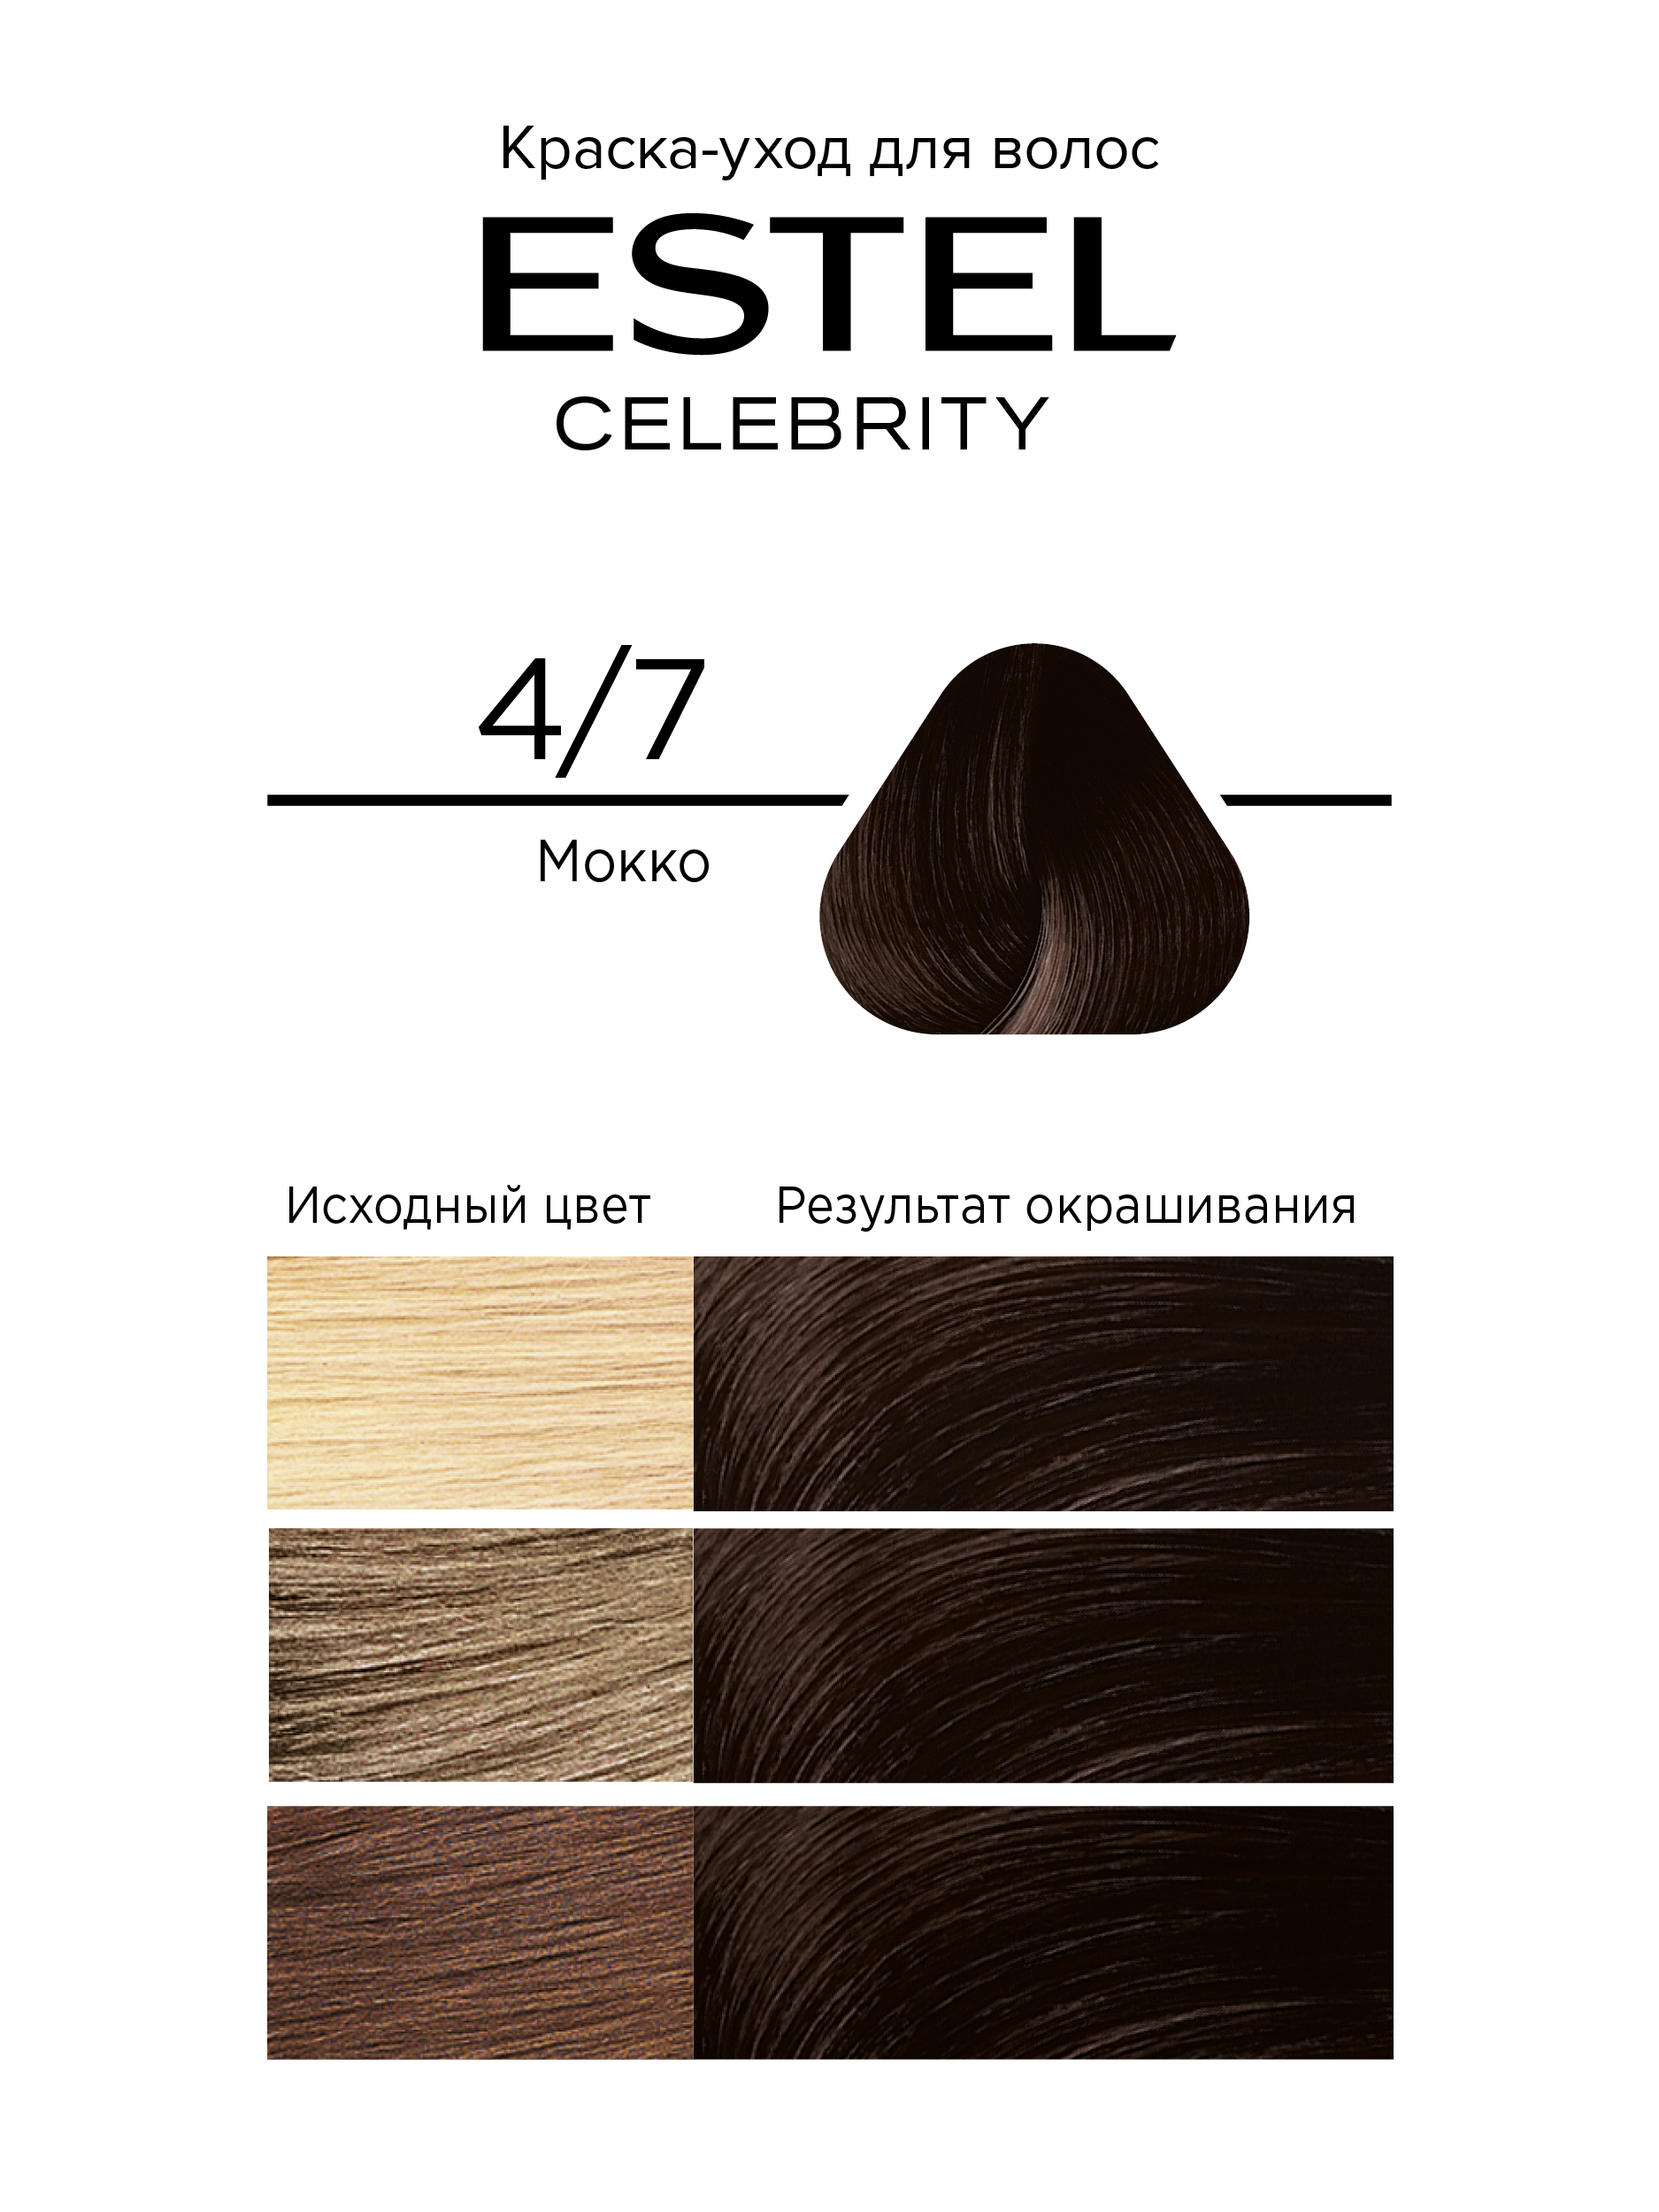 Краска для волос Estel Celebrity тон 4.7 мокко